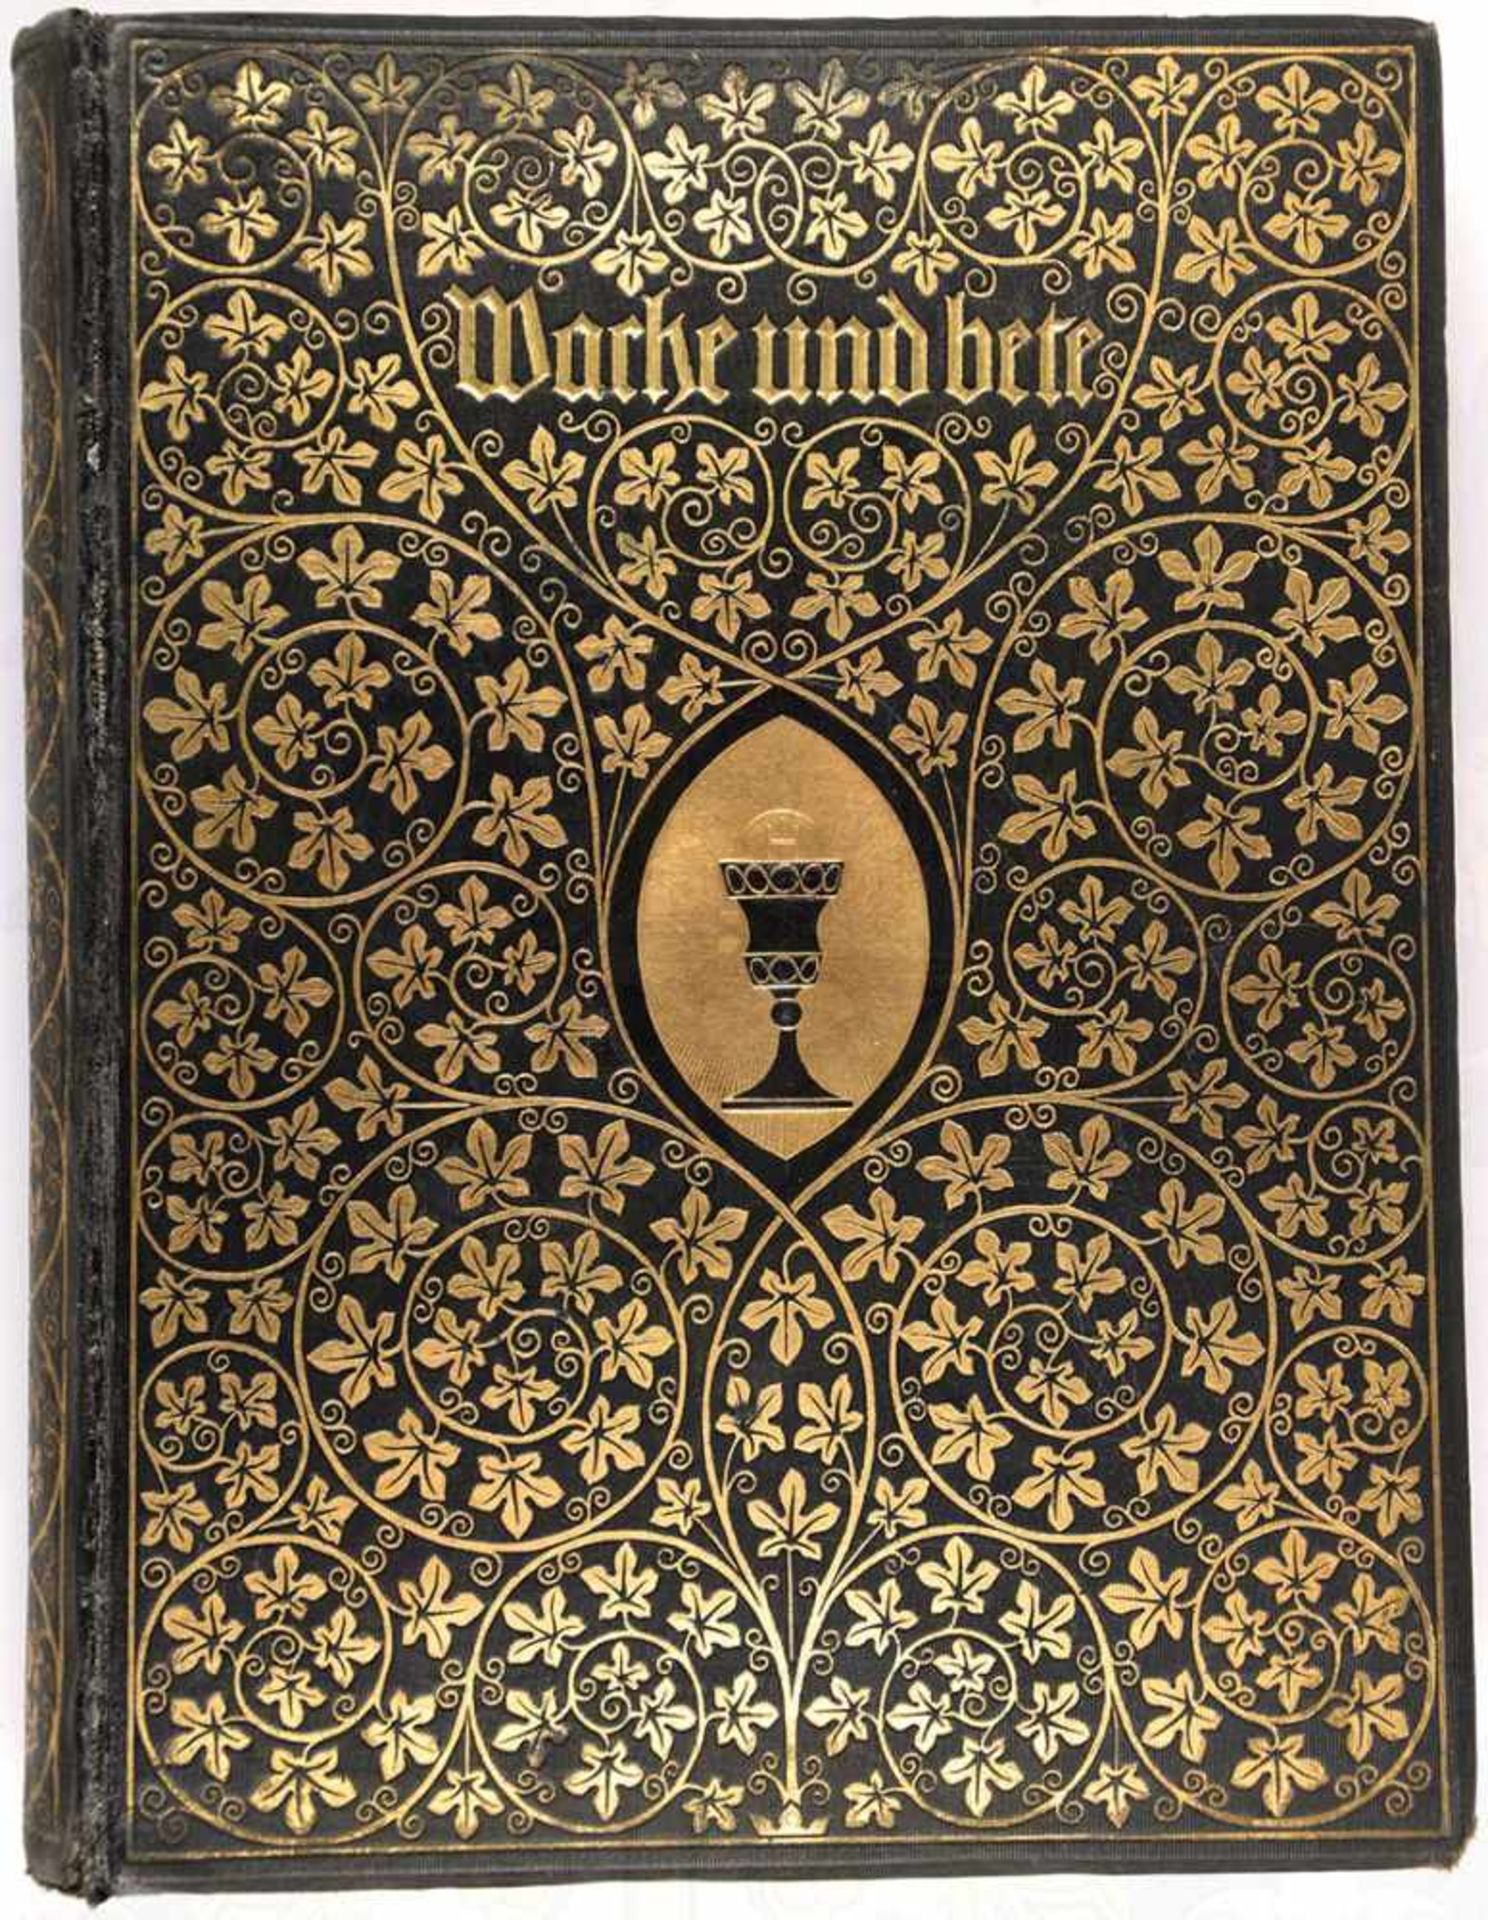 WACHE UND BETE, „Illustrierte evangelische Hausagende“, Braunschweig 1911, 558 S., Frontispiz fehlt,